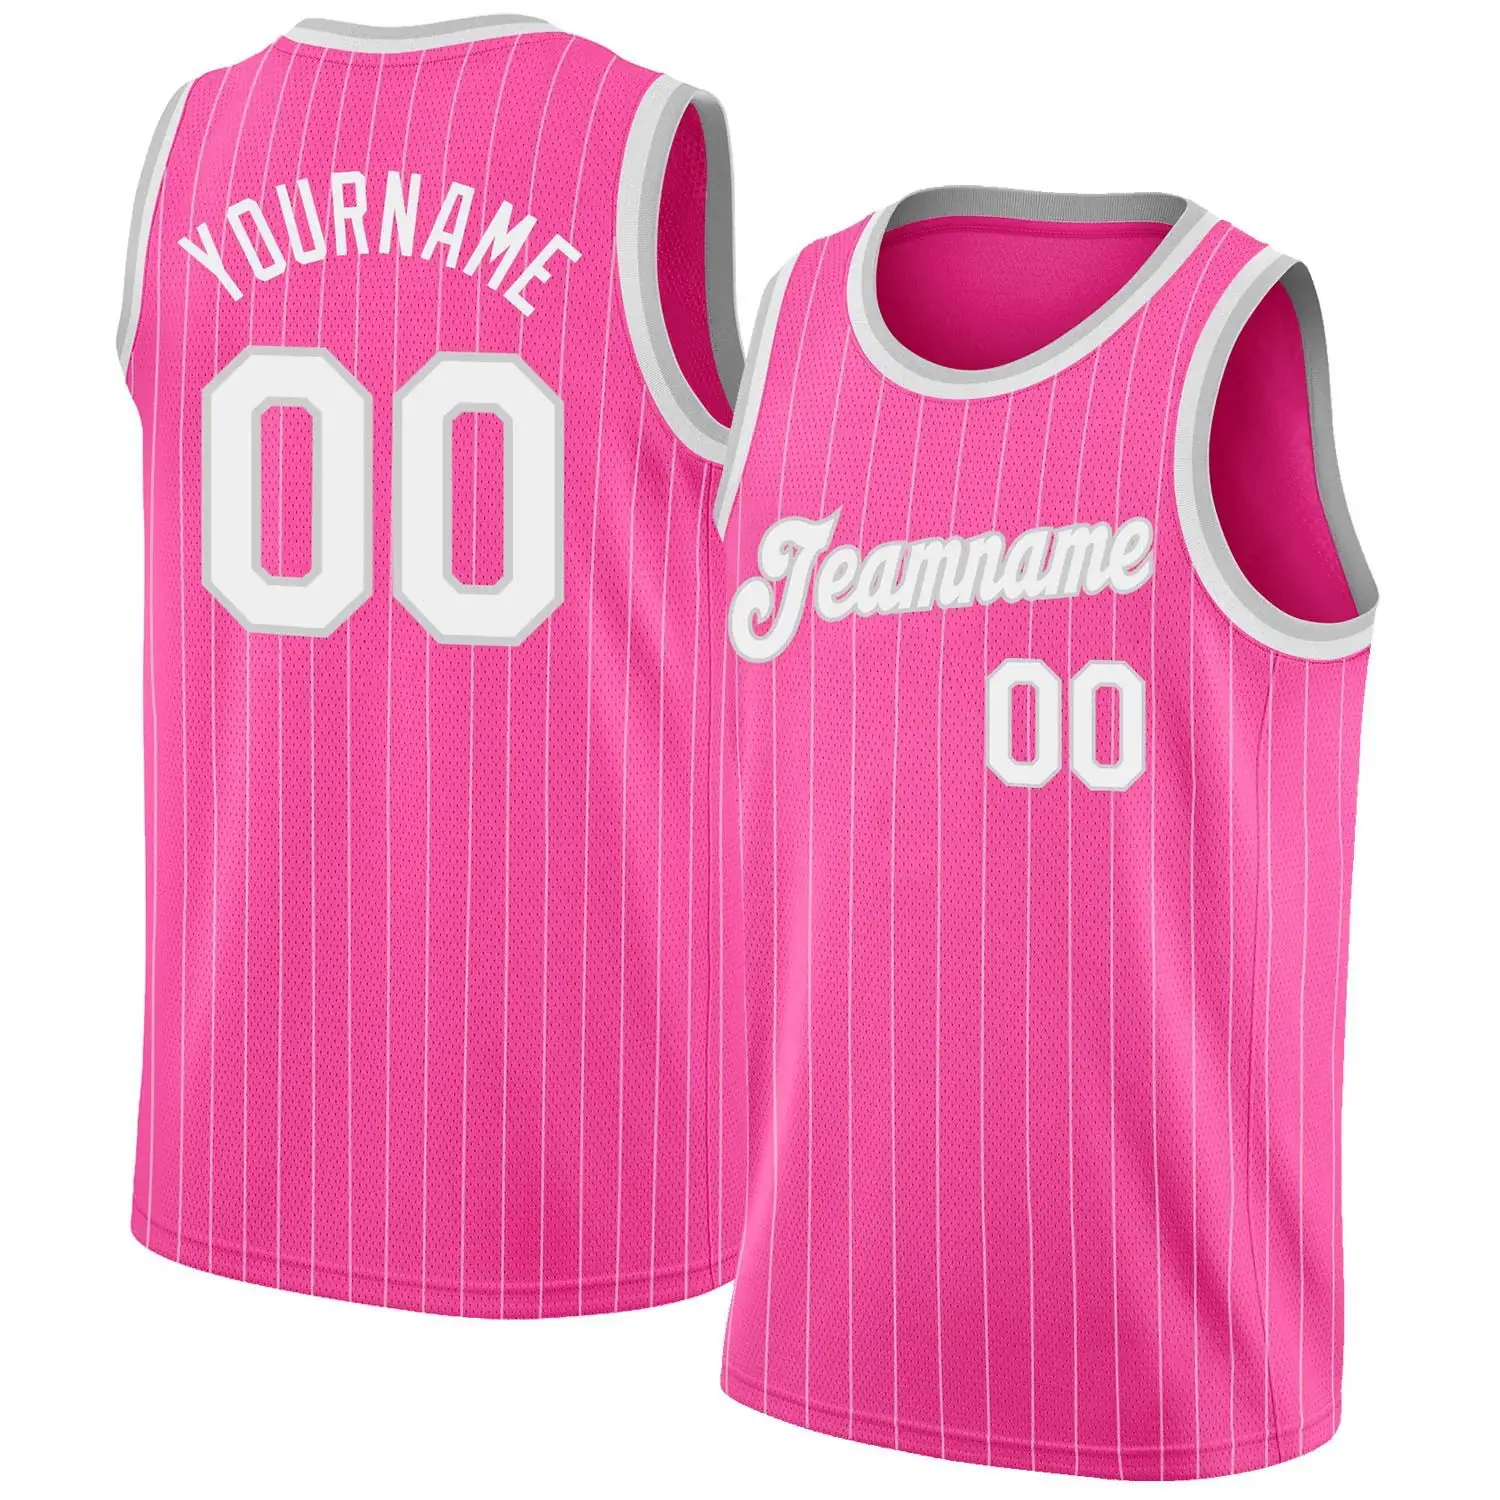 Баскетбольные майки розового цвета на заказ, мужские майки,персонализированные командные майки унисекс